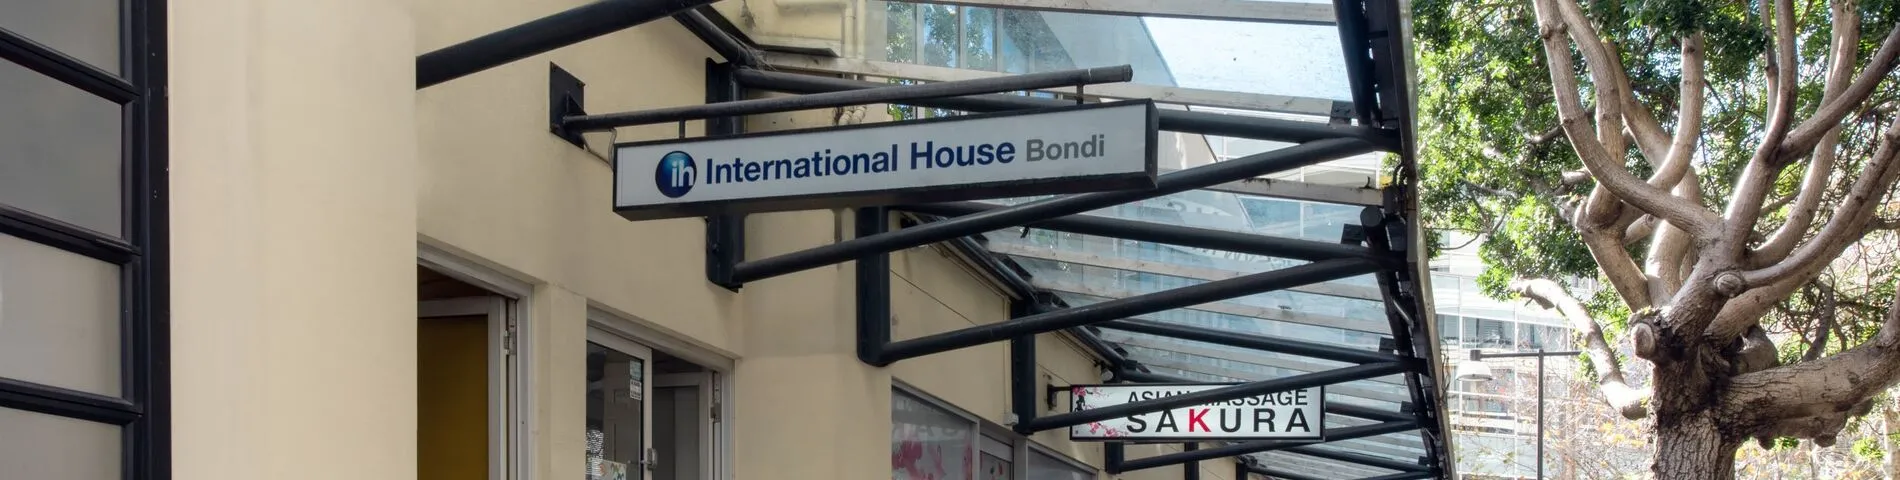 International House obrazek 1